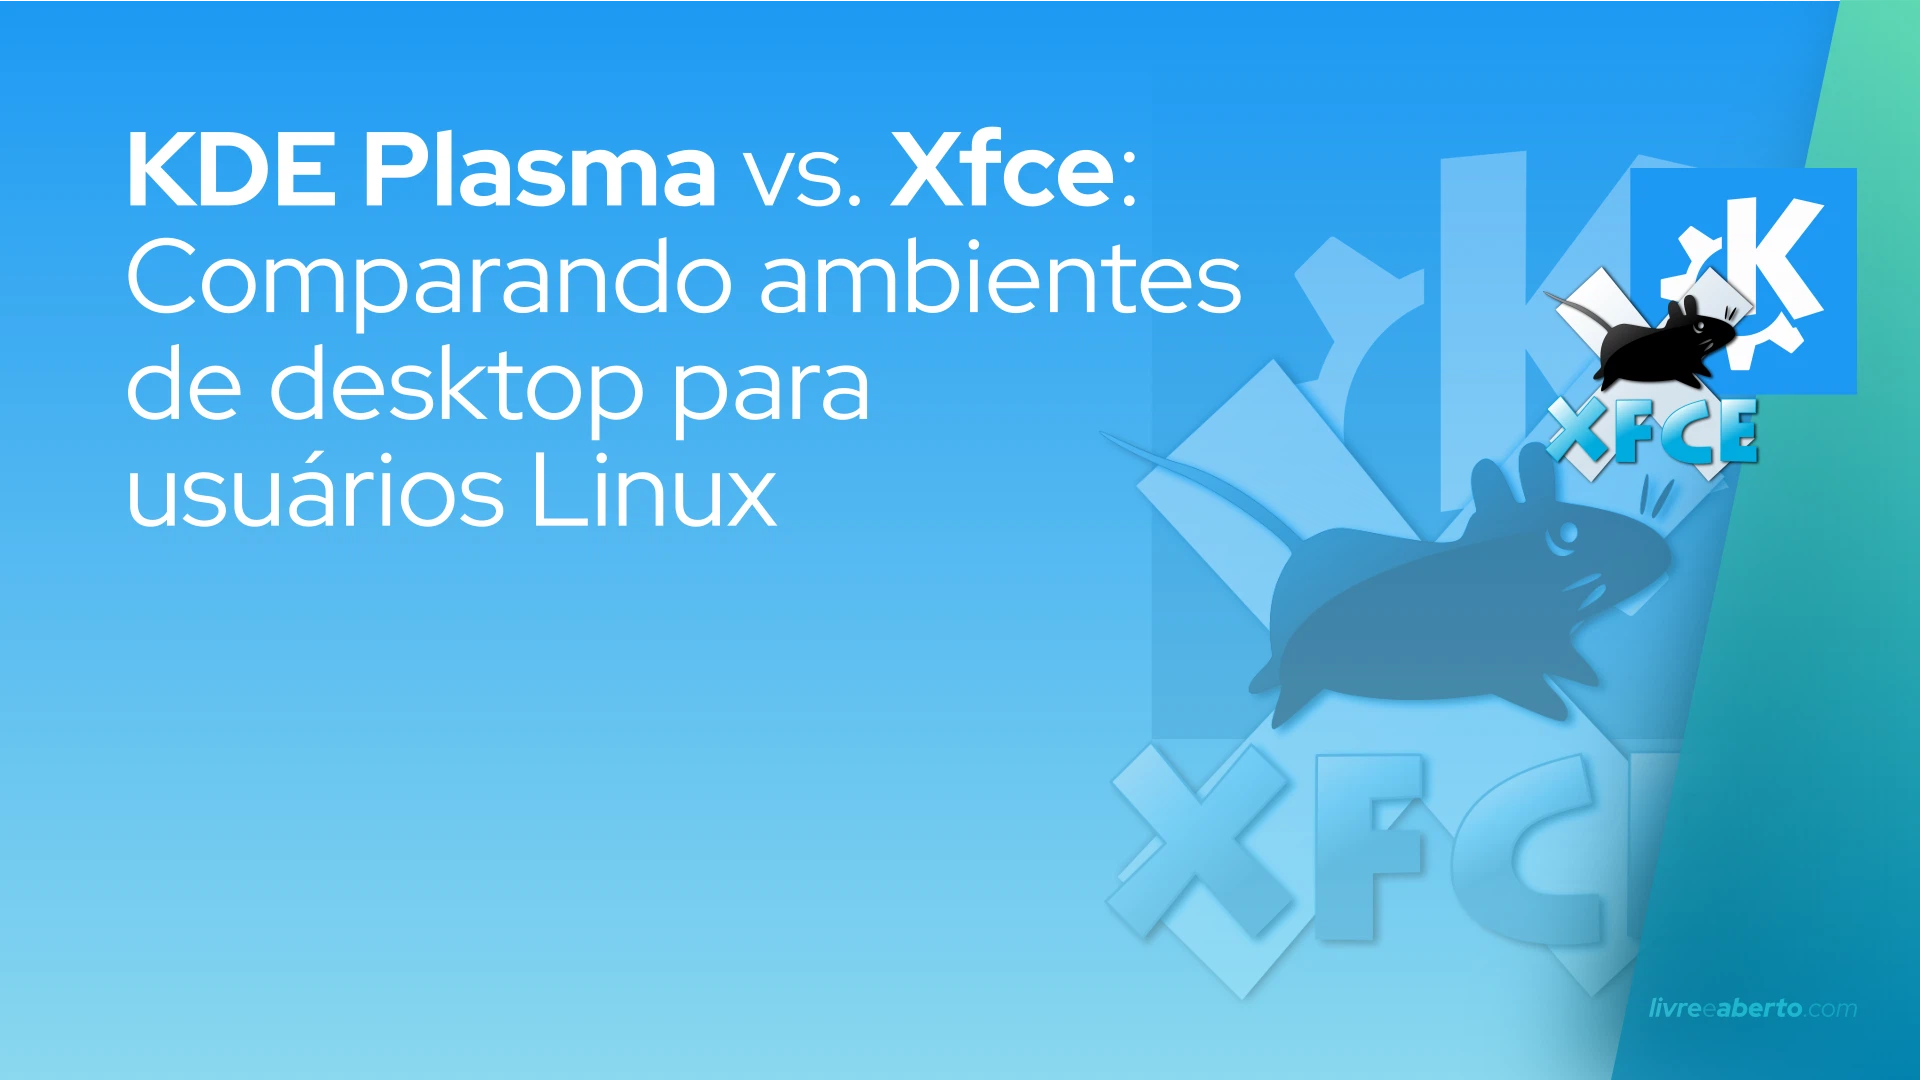 KDE Plasma vs. Xfce: Comparando ambientes de desktop para usuários Linux